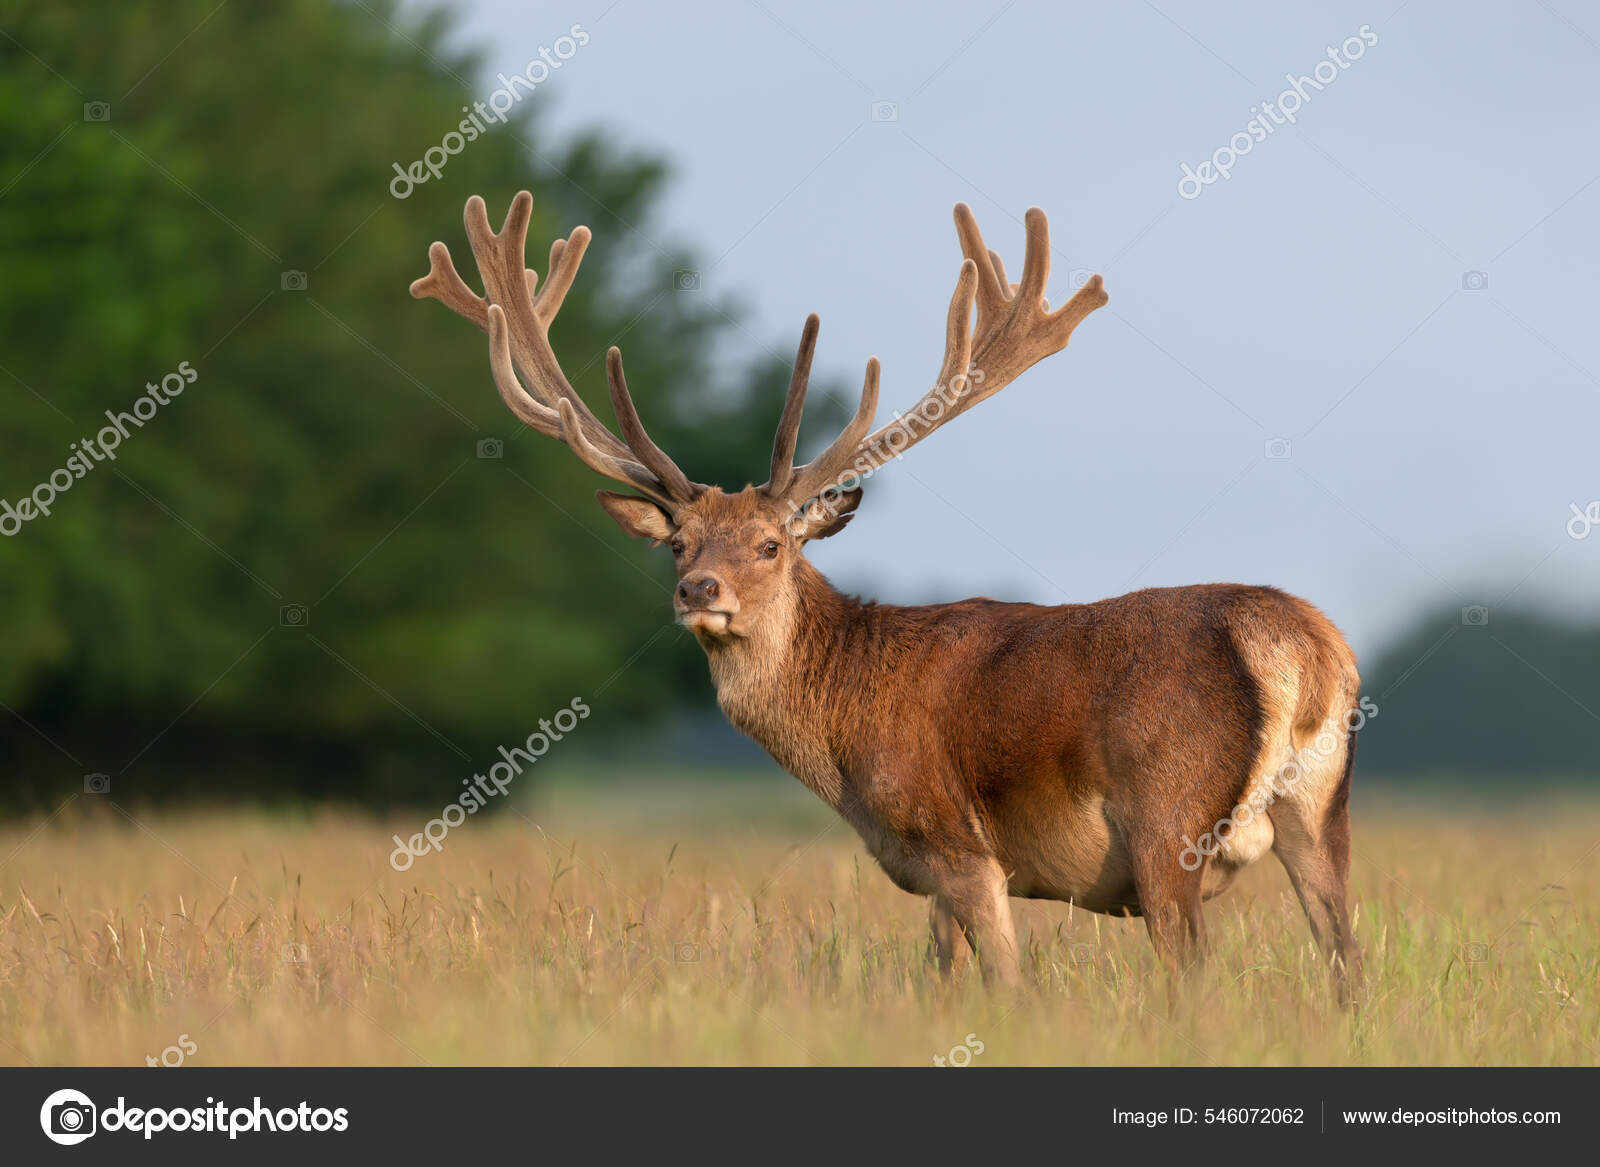 Fotomural Venado ciervo rojo con cuernos impresionantes